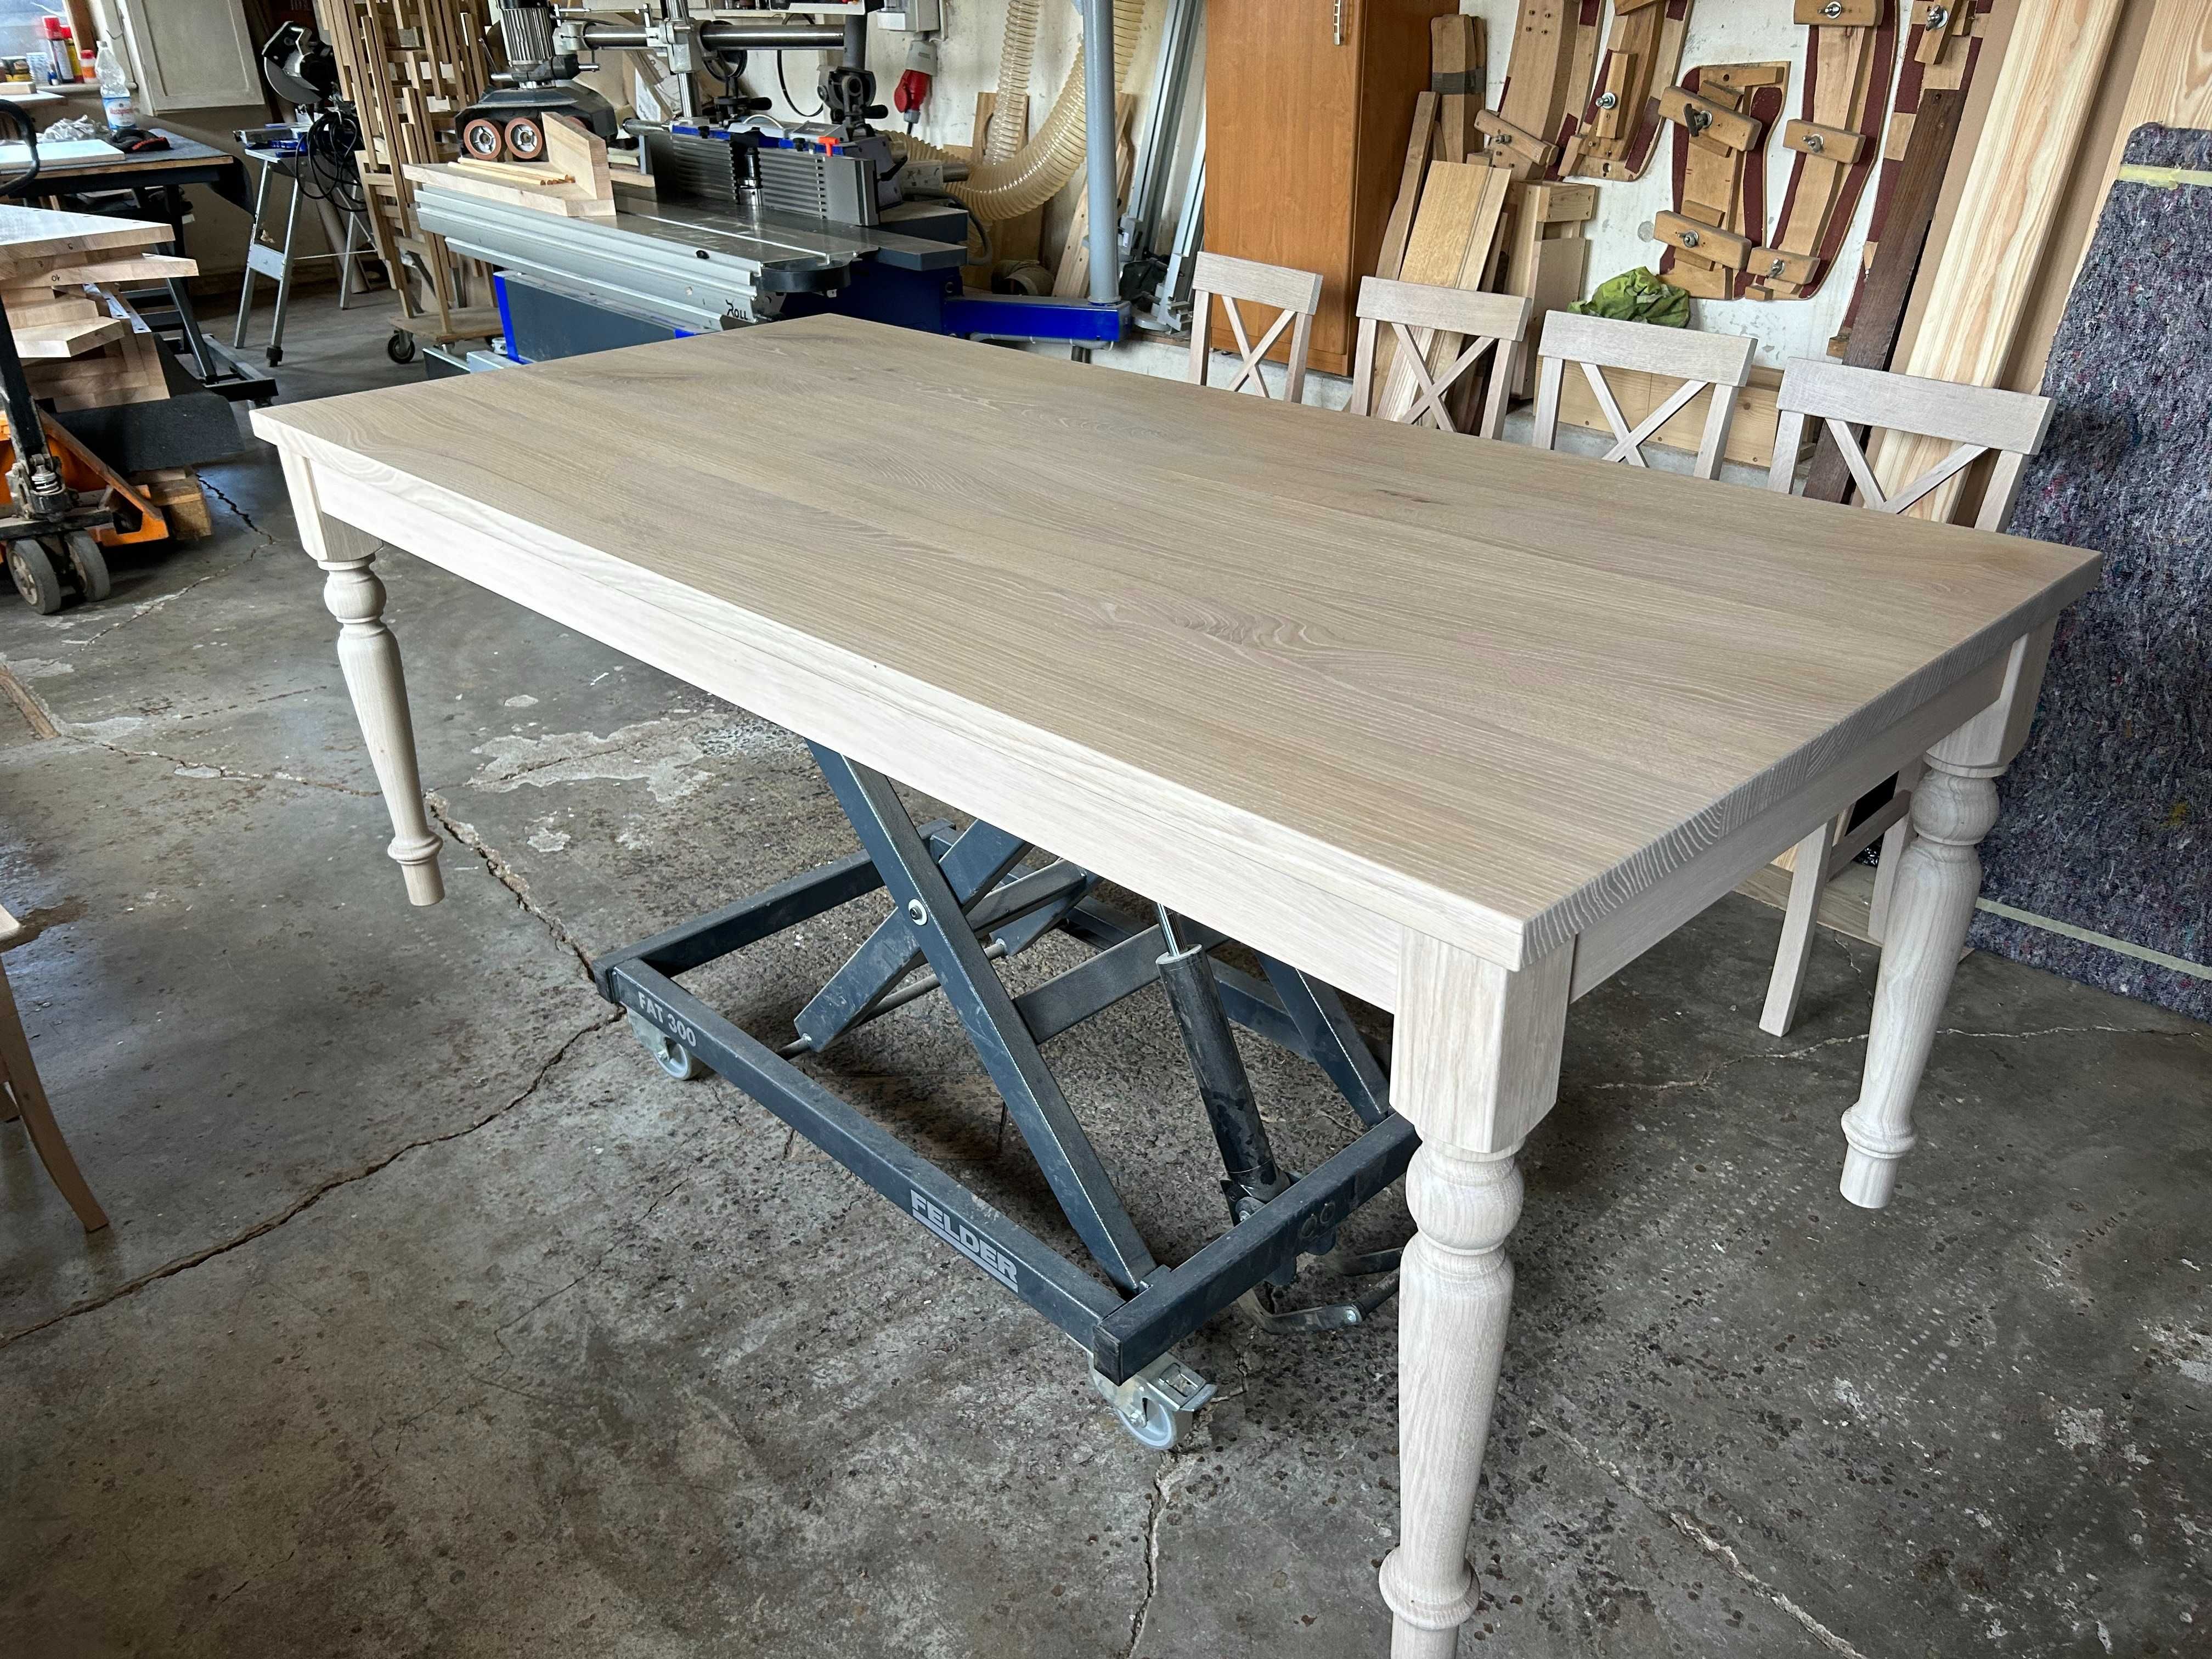 Stół dębowy drewniany